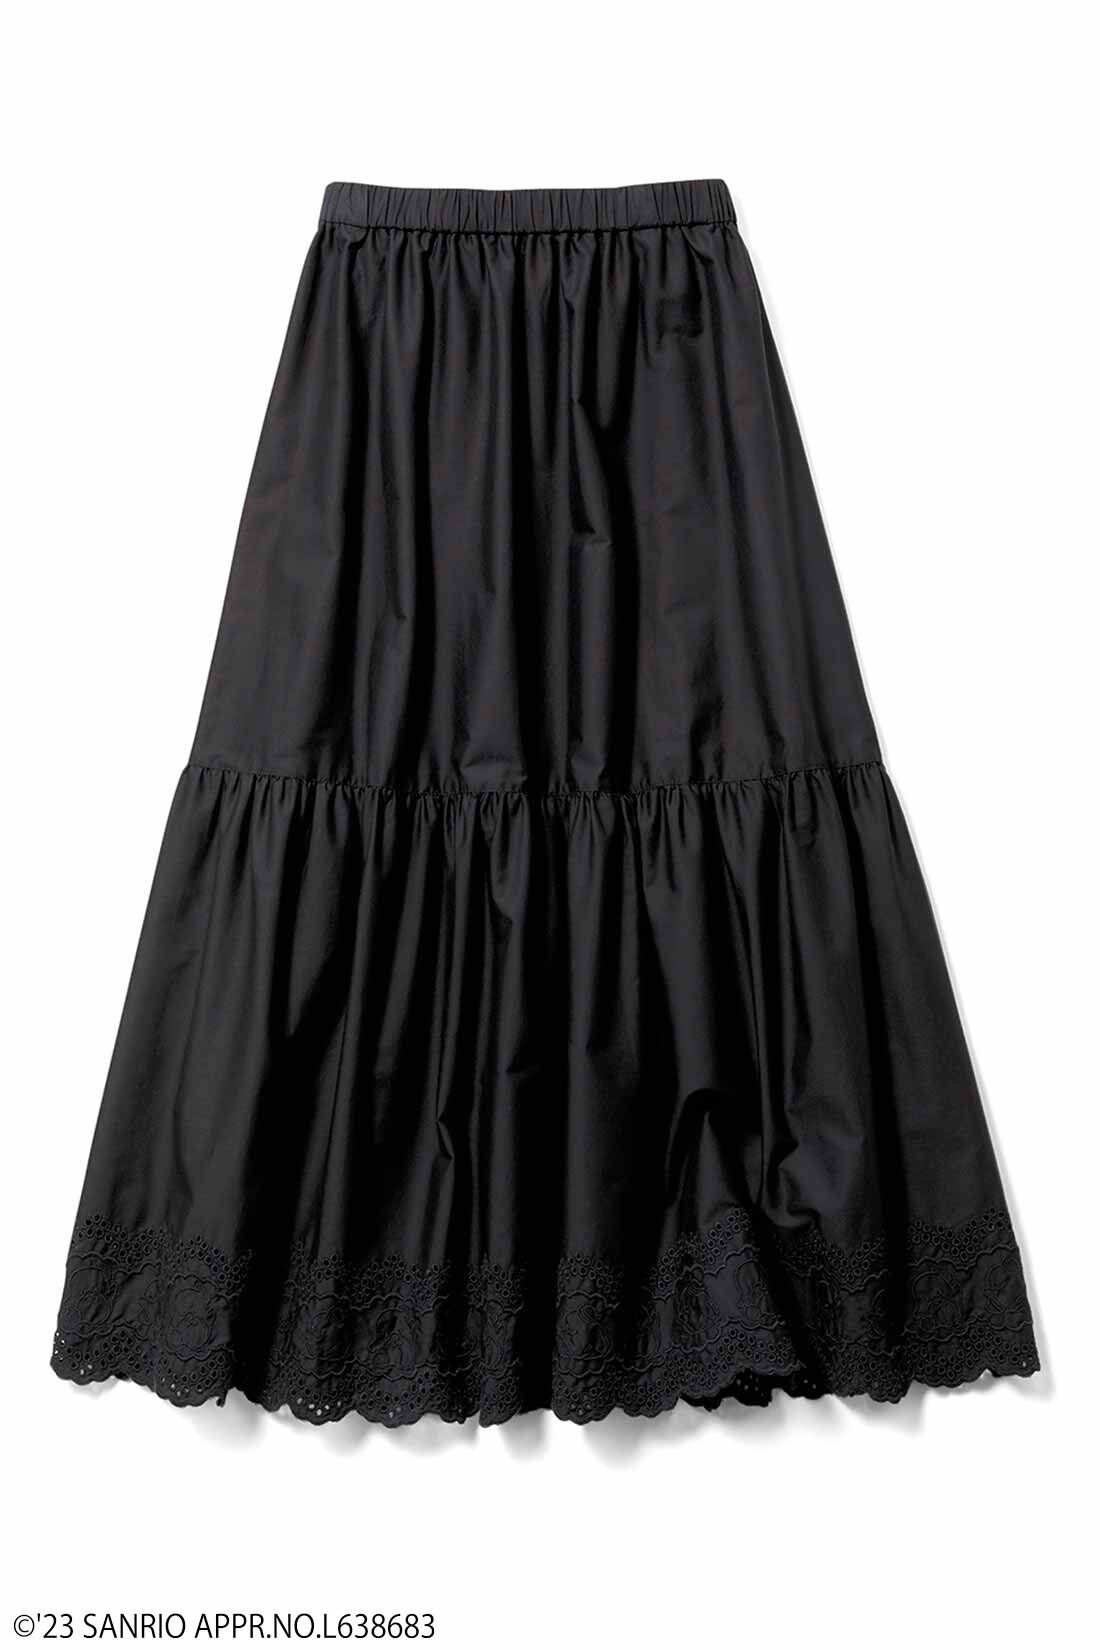 シロップ．|サンリオキャラクターコラボ コットンスカラップレースのスカート〈タキシードサム〉〈ブラック〉|ブラック